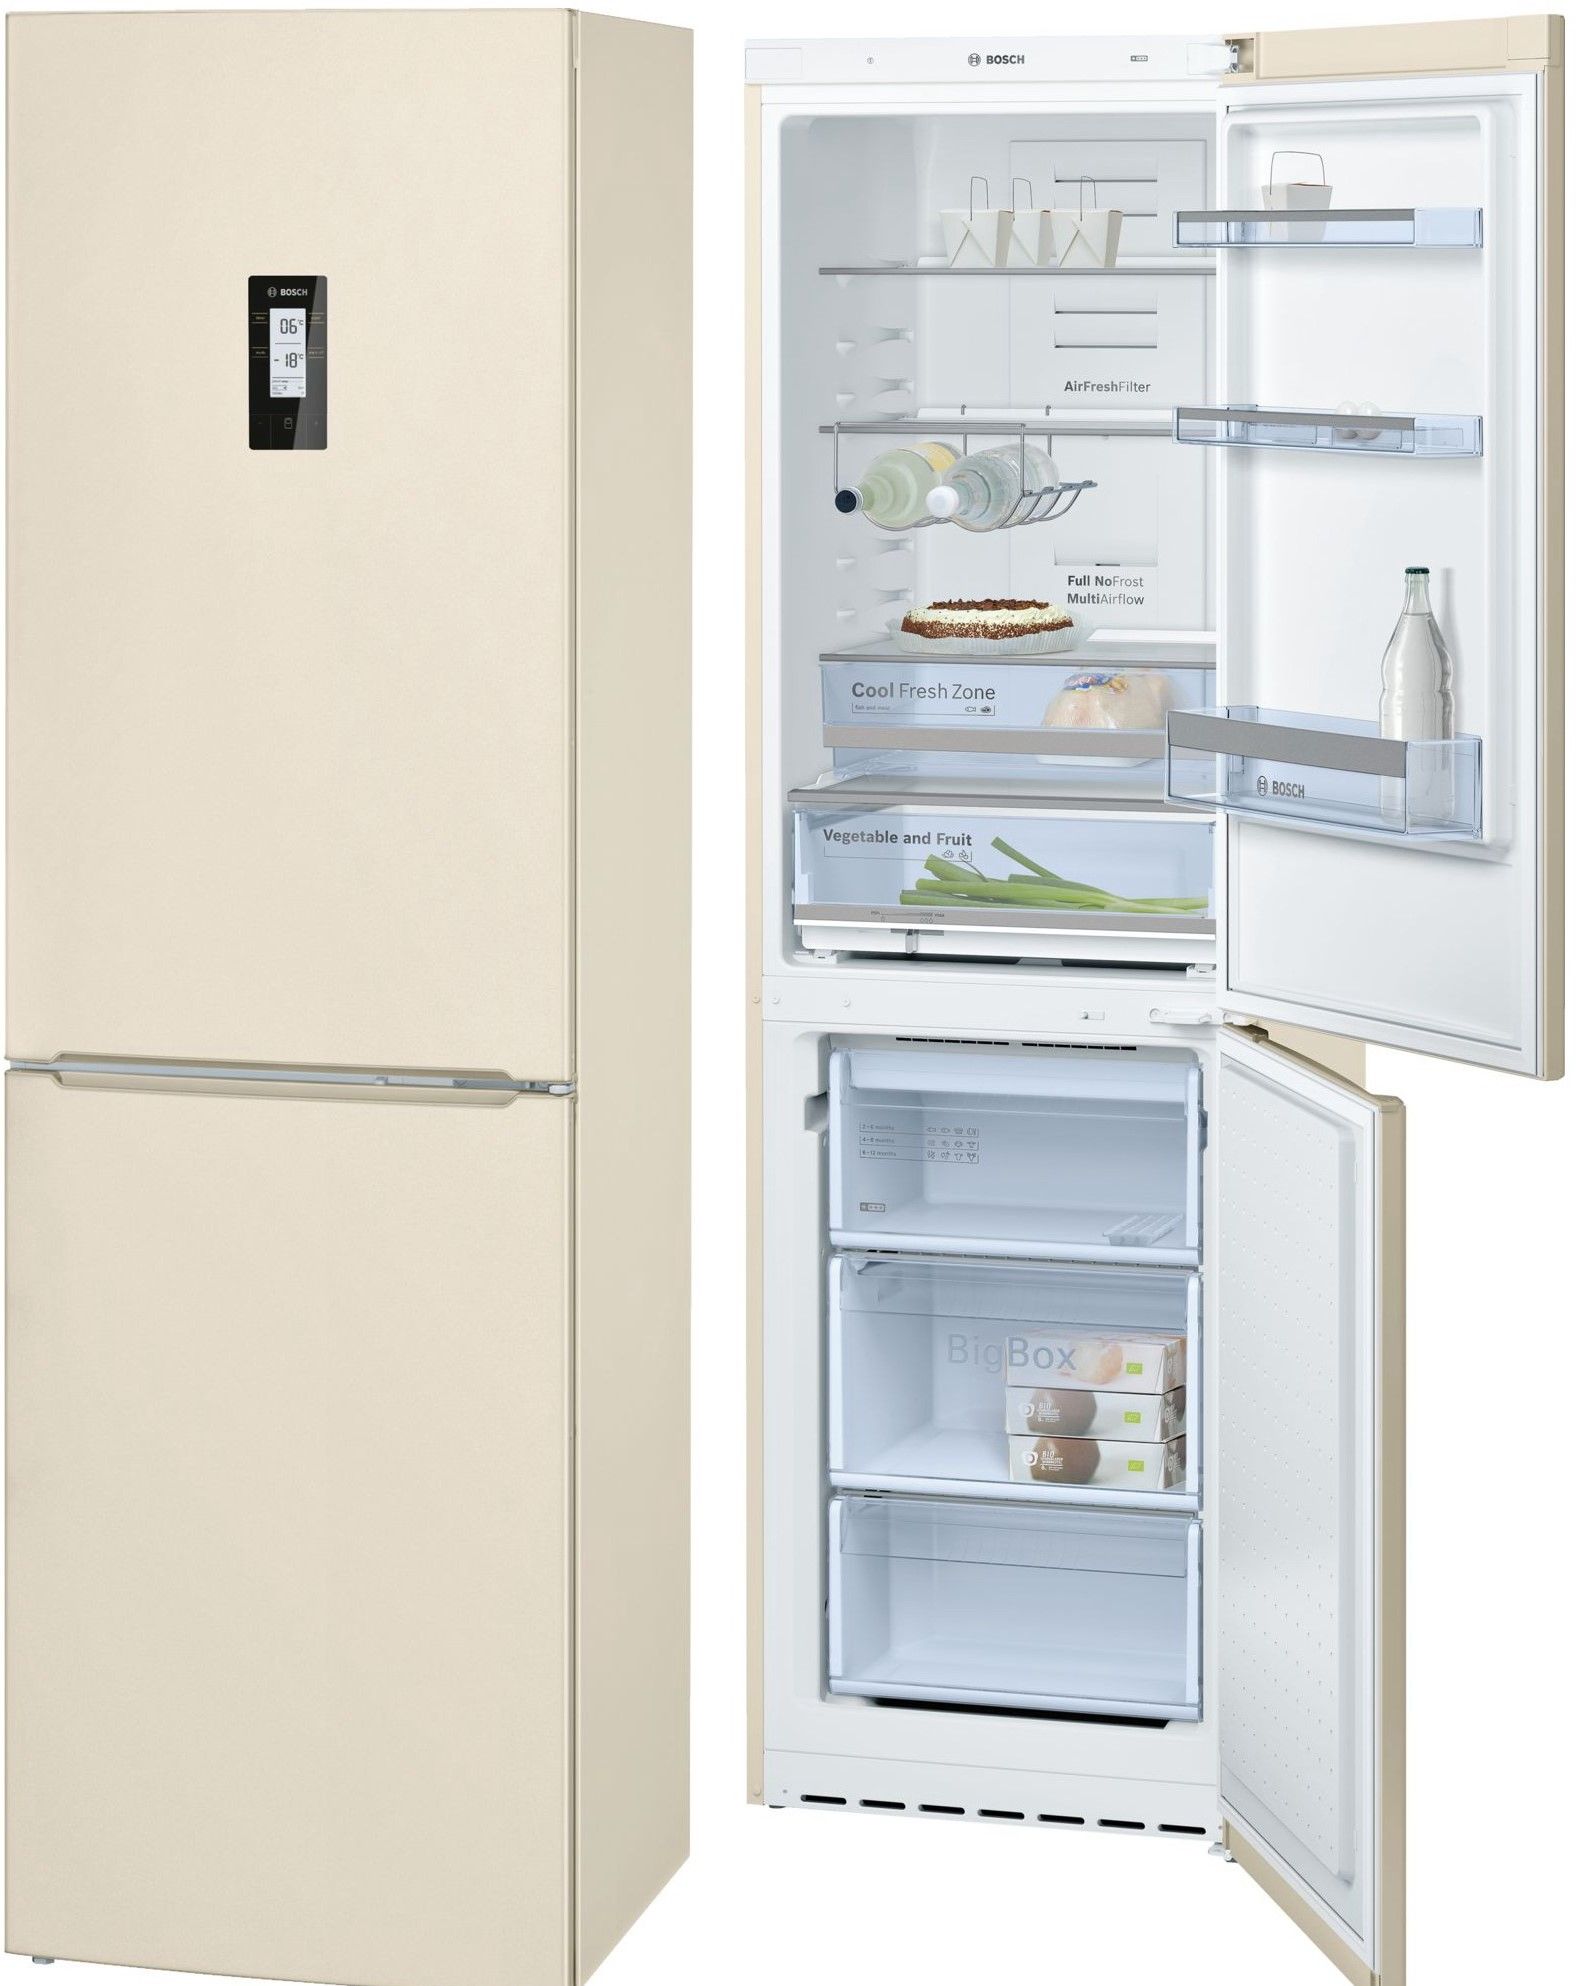 холодильник bosch kgn39xk18r, купить в Красноярске холодильник bosch kgn39xk18r,  купить в Красноярске дешево холодильник bosch kgn39xk18r, купить в Красноярске минимальной цене холодильник bosch kgn39xk18r